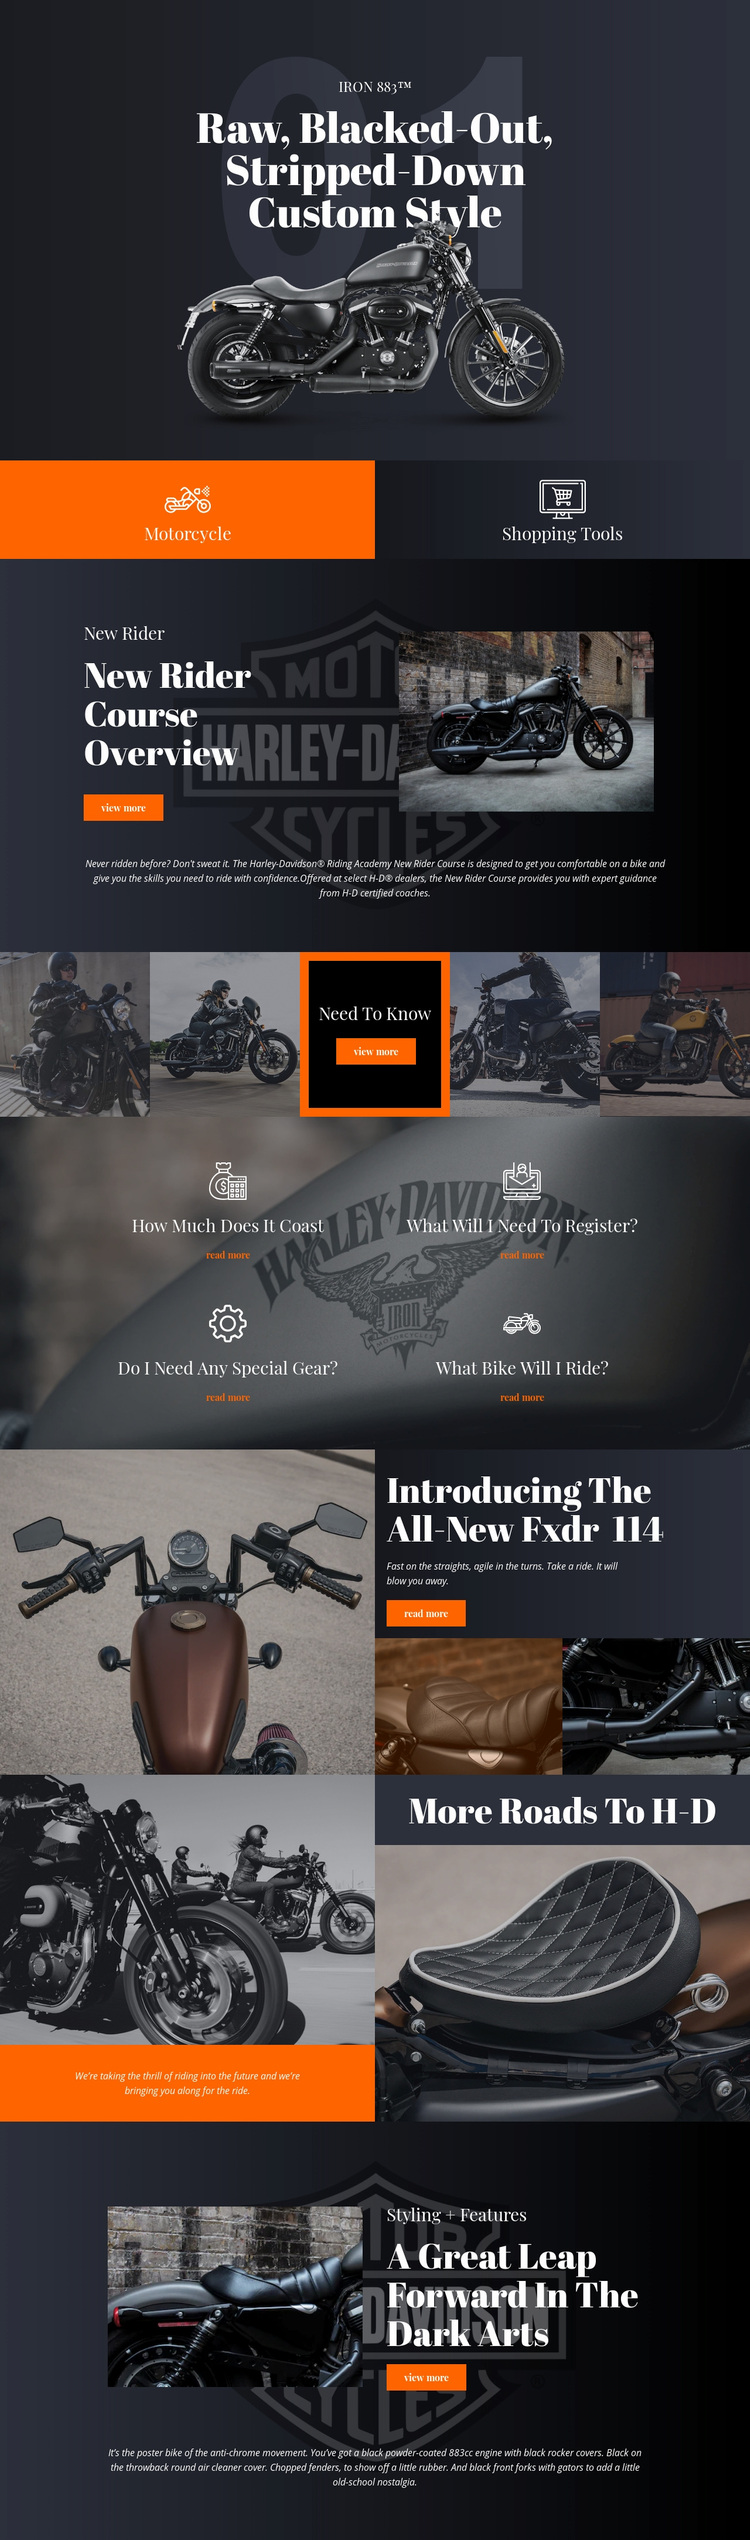 Harley Davidson Web Page Designer